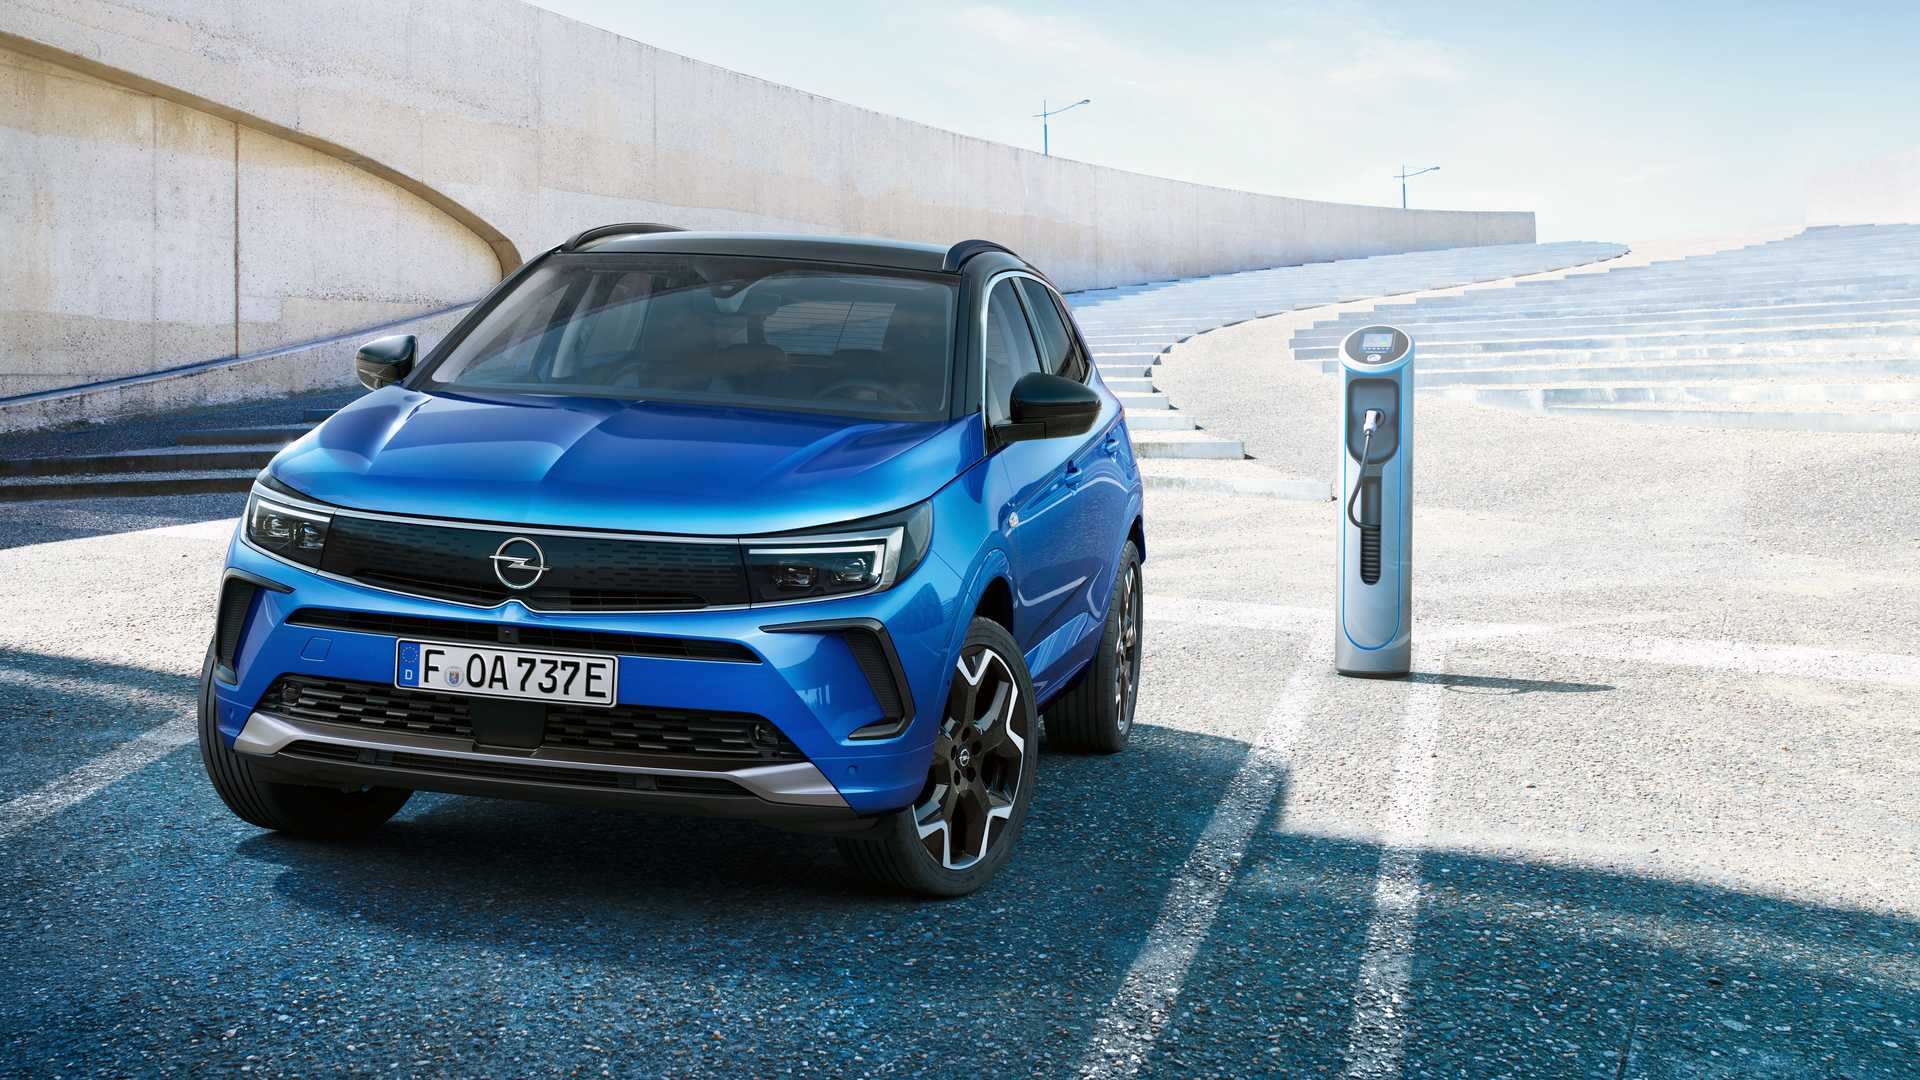 نمای جلو فیس لیفت کراس اور اوپل گرندلند 2022 / 2022 Opel Grandland crossover آبی رنگ در حال شارژ